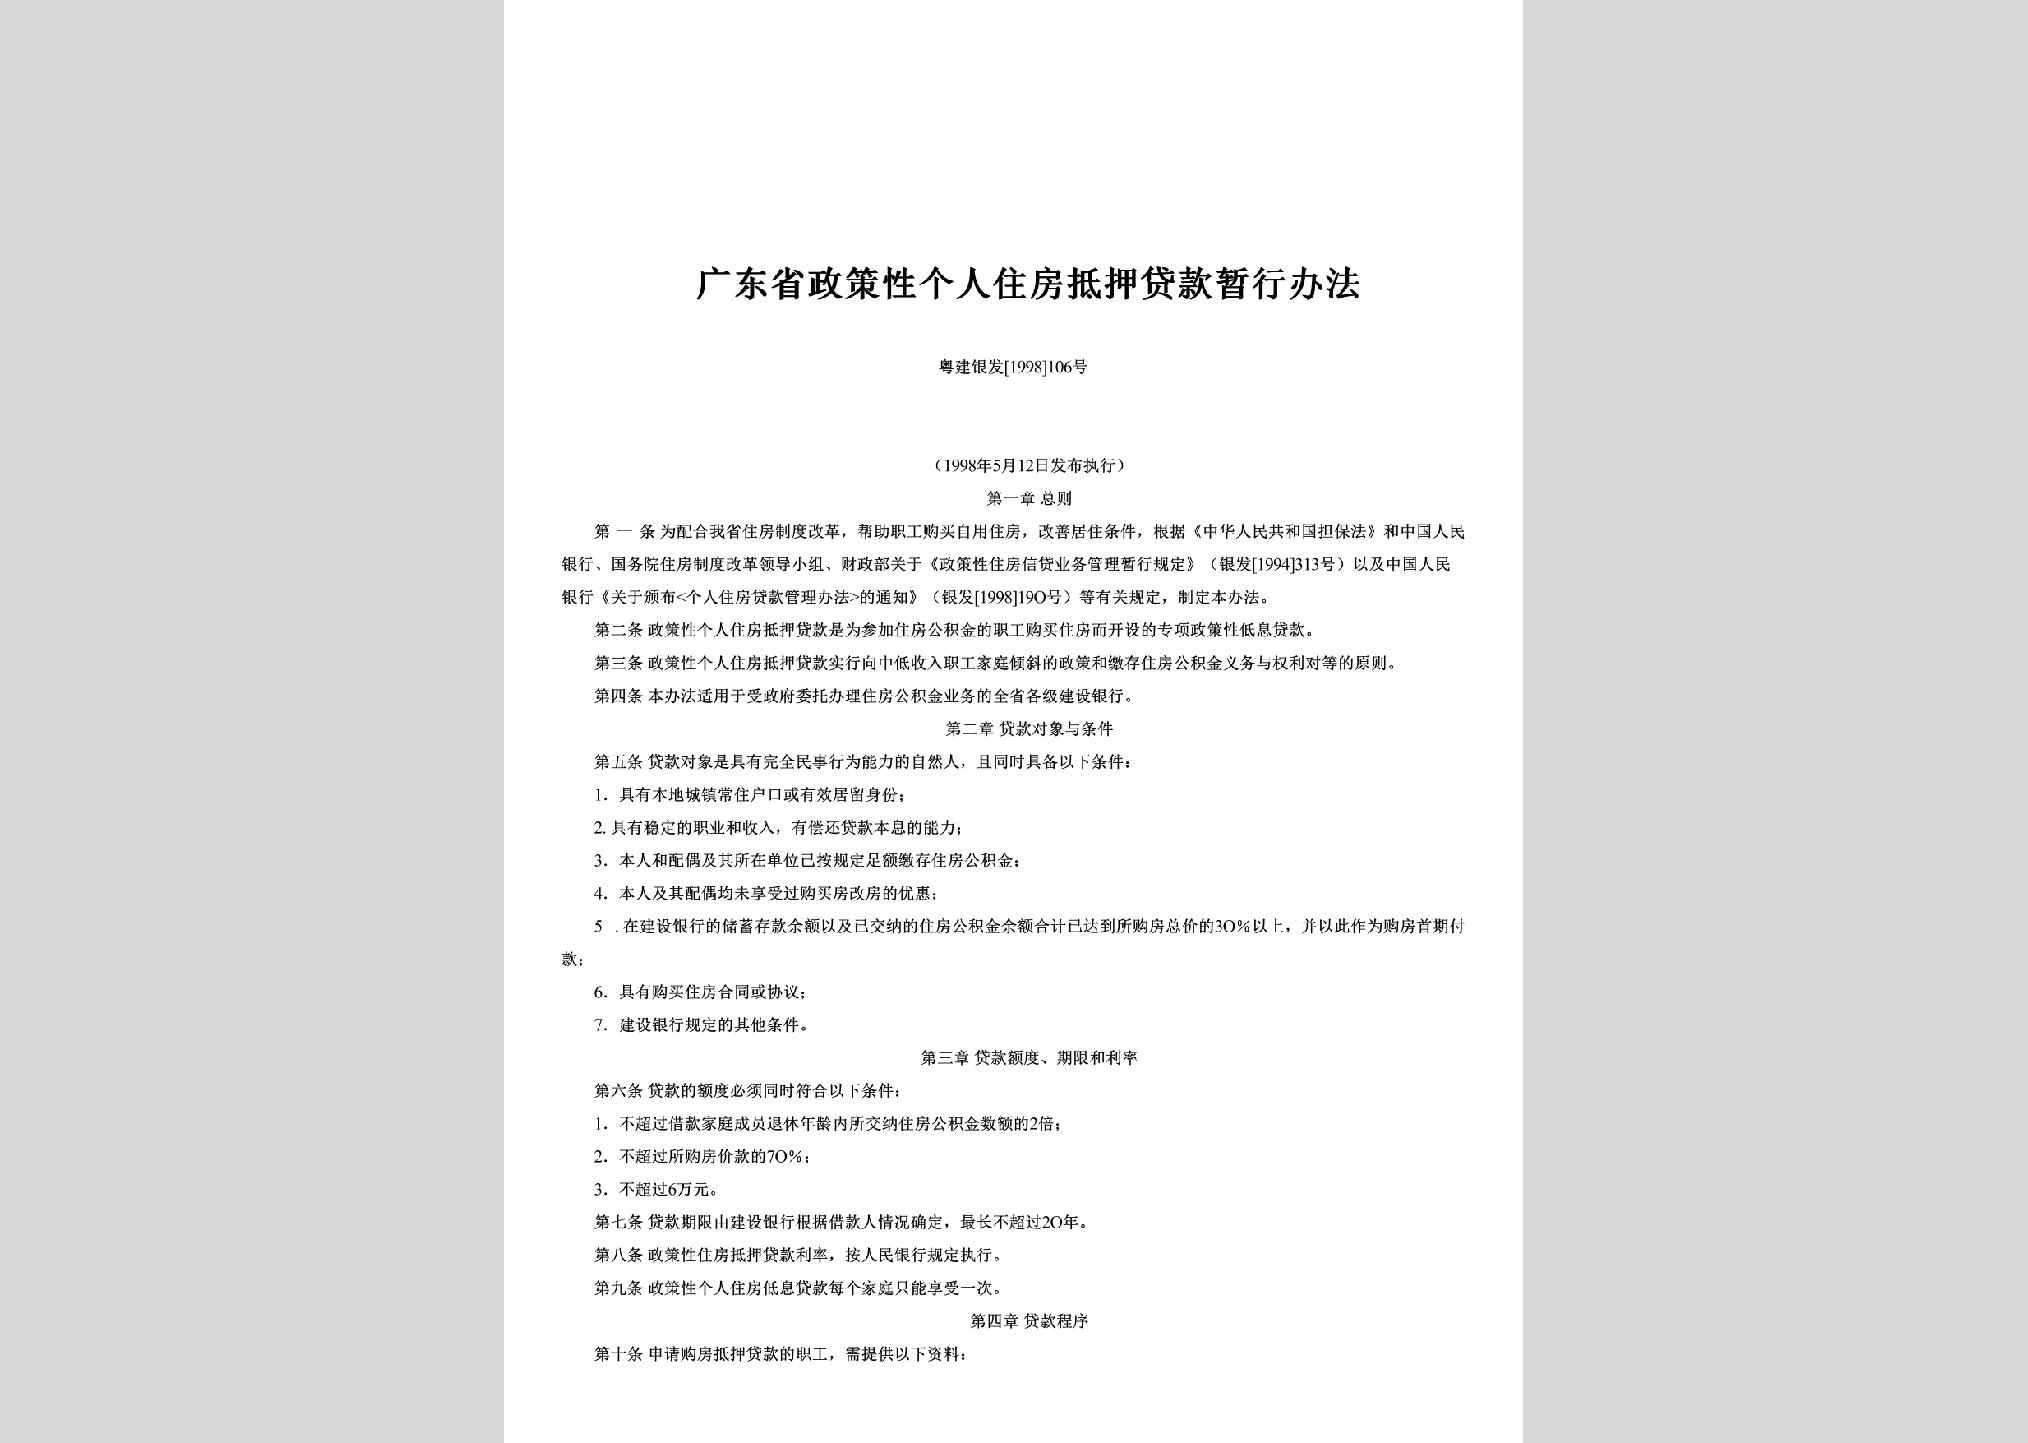 粤建银发[1998]106号：广东省政策性个人住房抵押贷款暂行办法